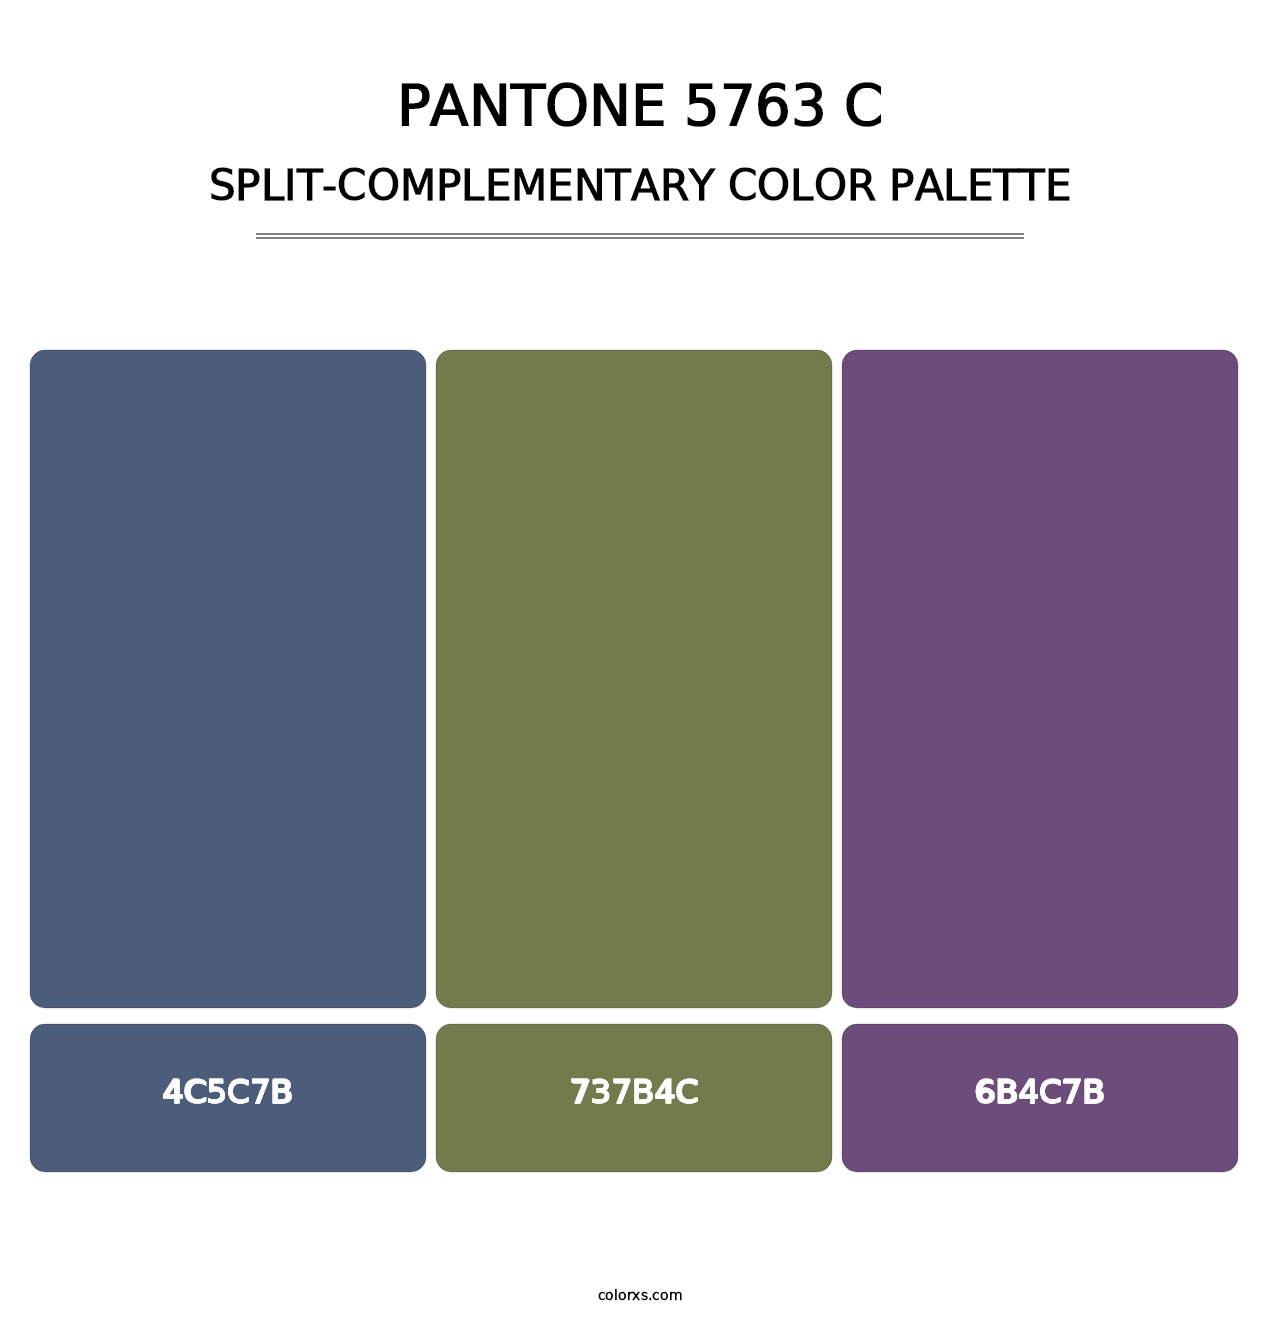 PANTONE 5763 C - Split-Complementary Color Palette